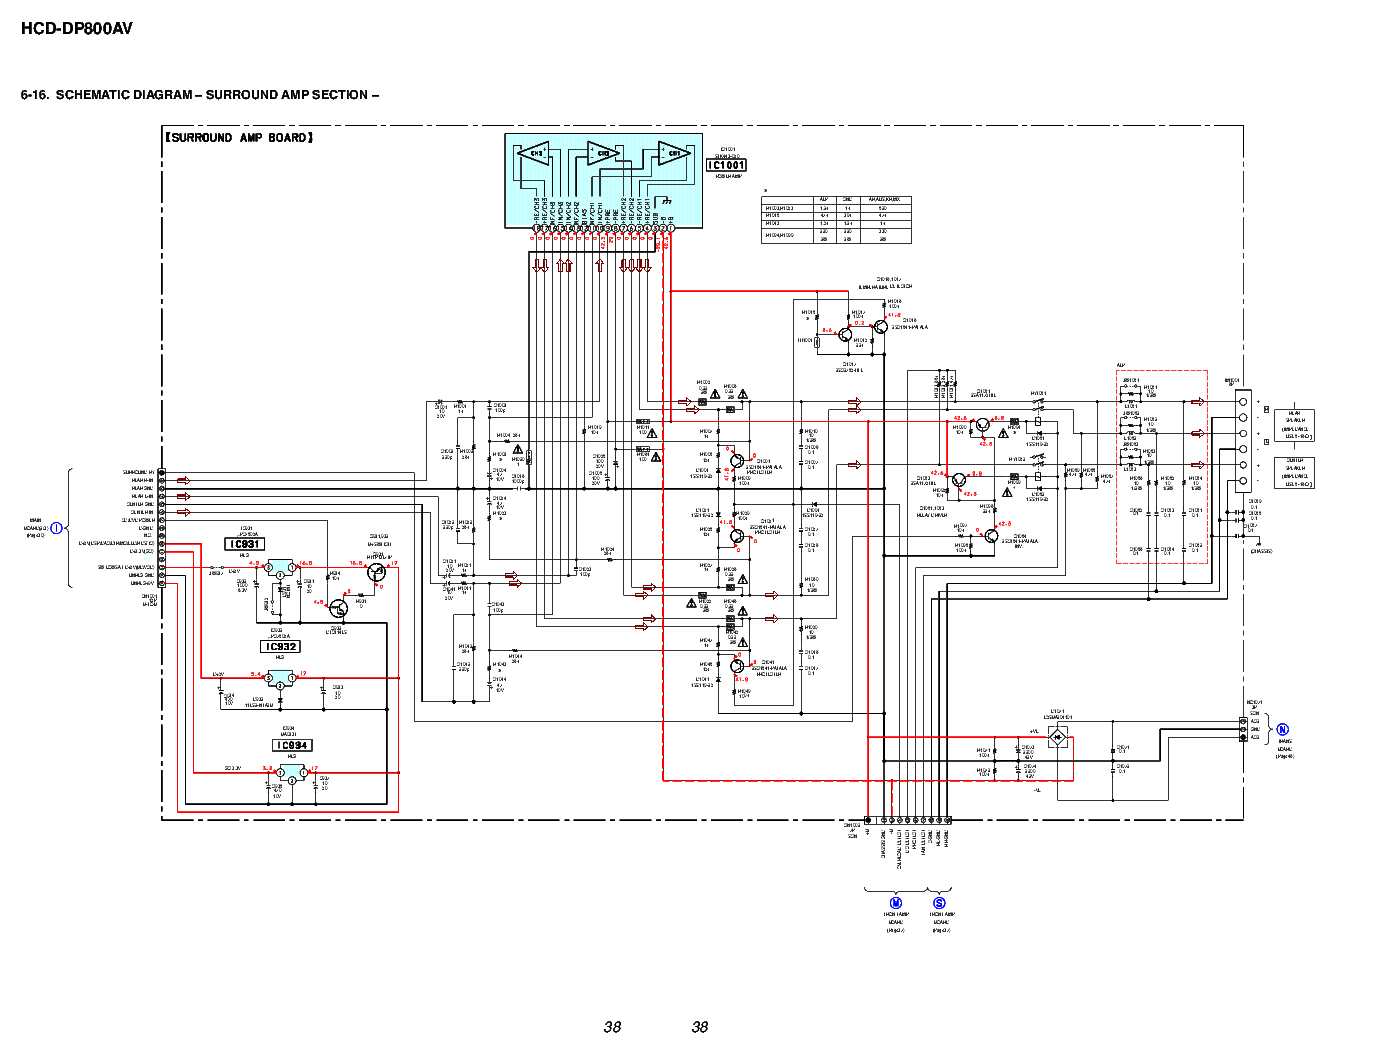 Зарядное устройство sony ep800 схема